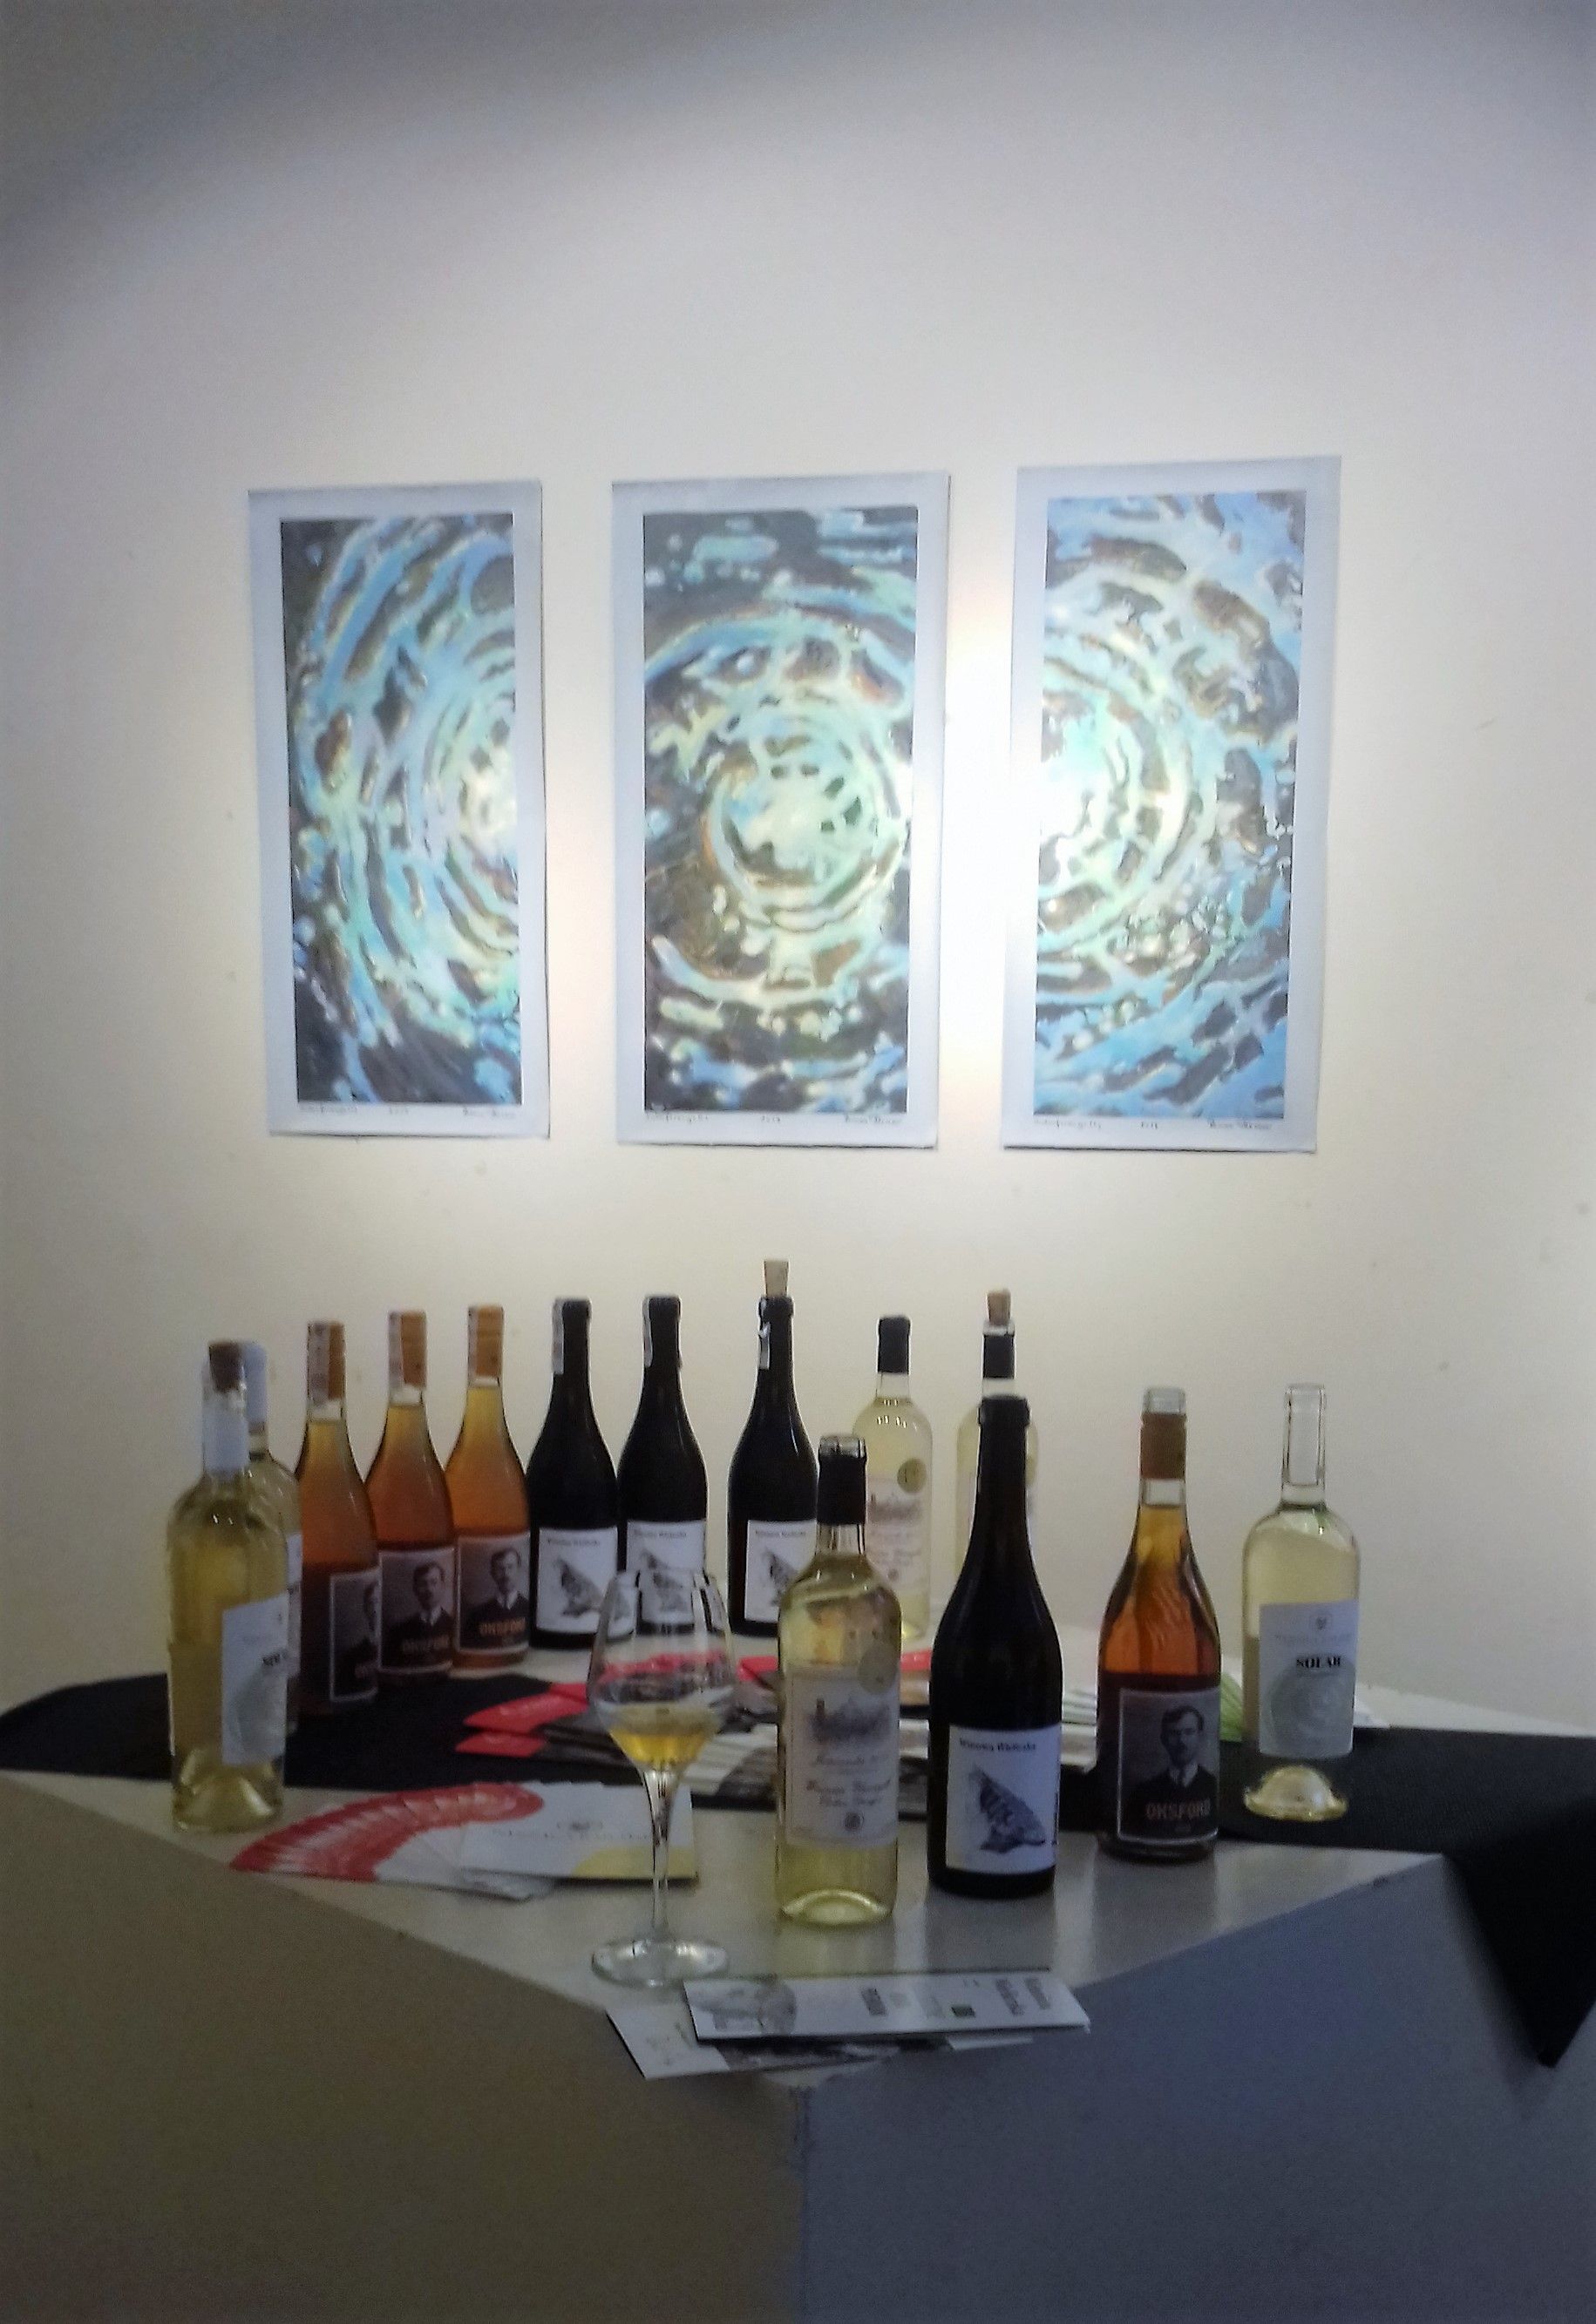 Na zdjęciu zbliżenie trzech obrazó na ścianie, Pod ścianą stoją w rzędzie butelki z polskimi winami.